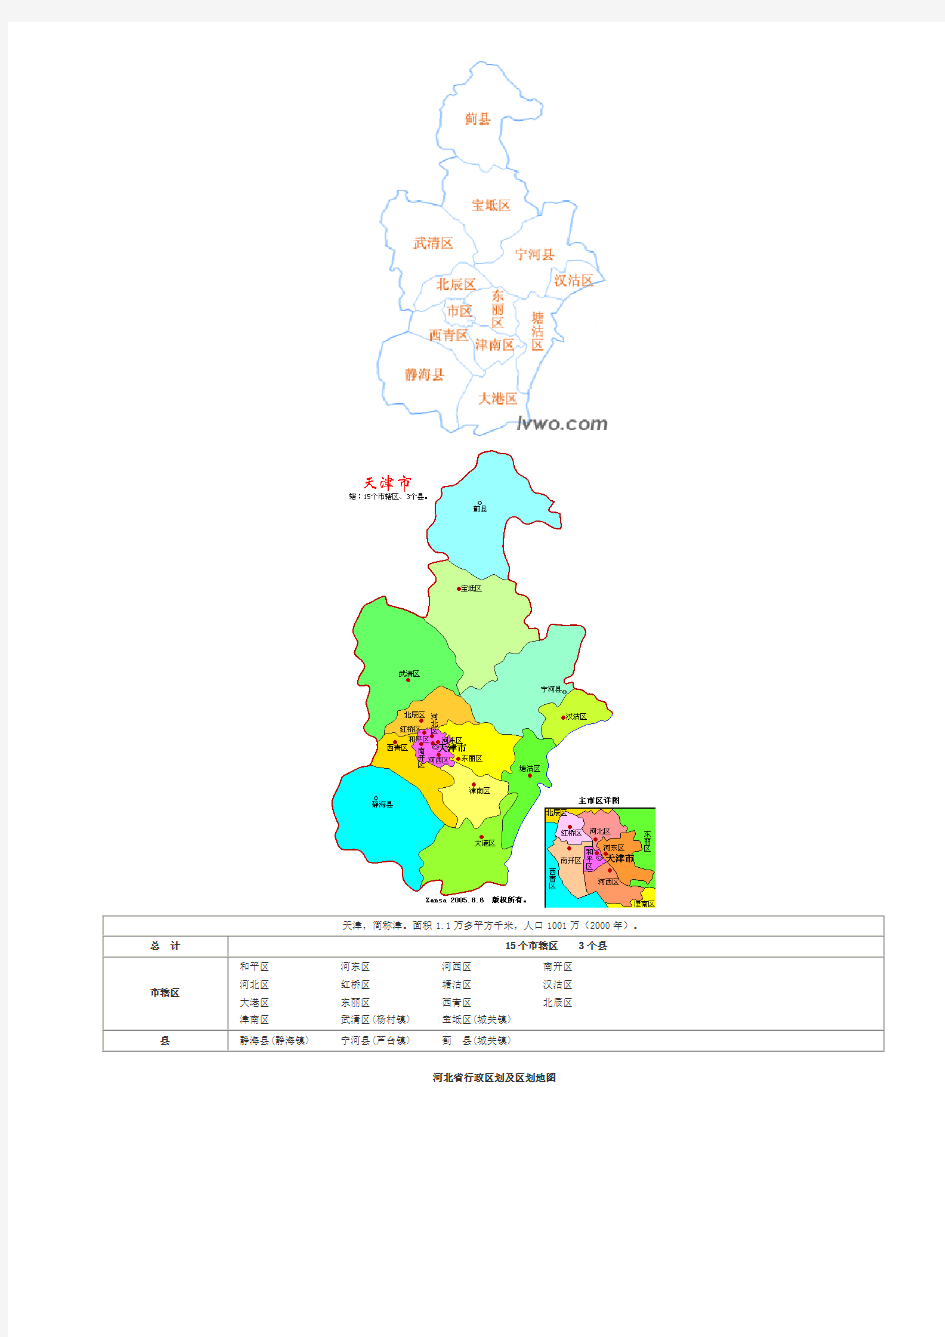 中国分省行政区划及区划地图资料(V2.0)